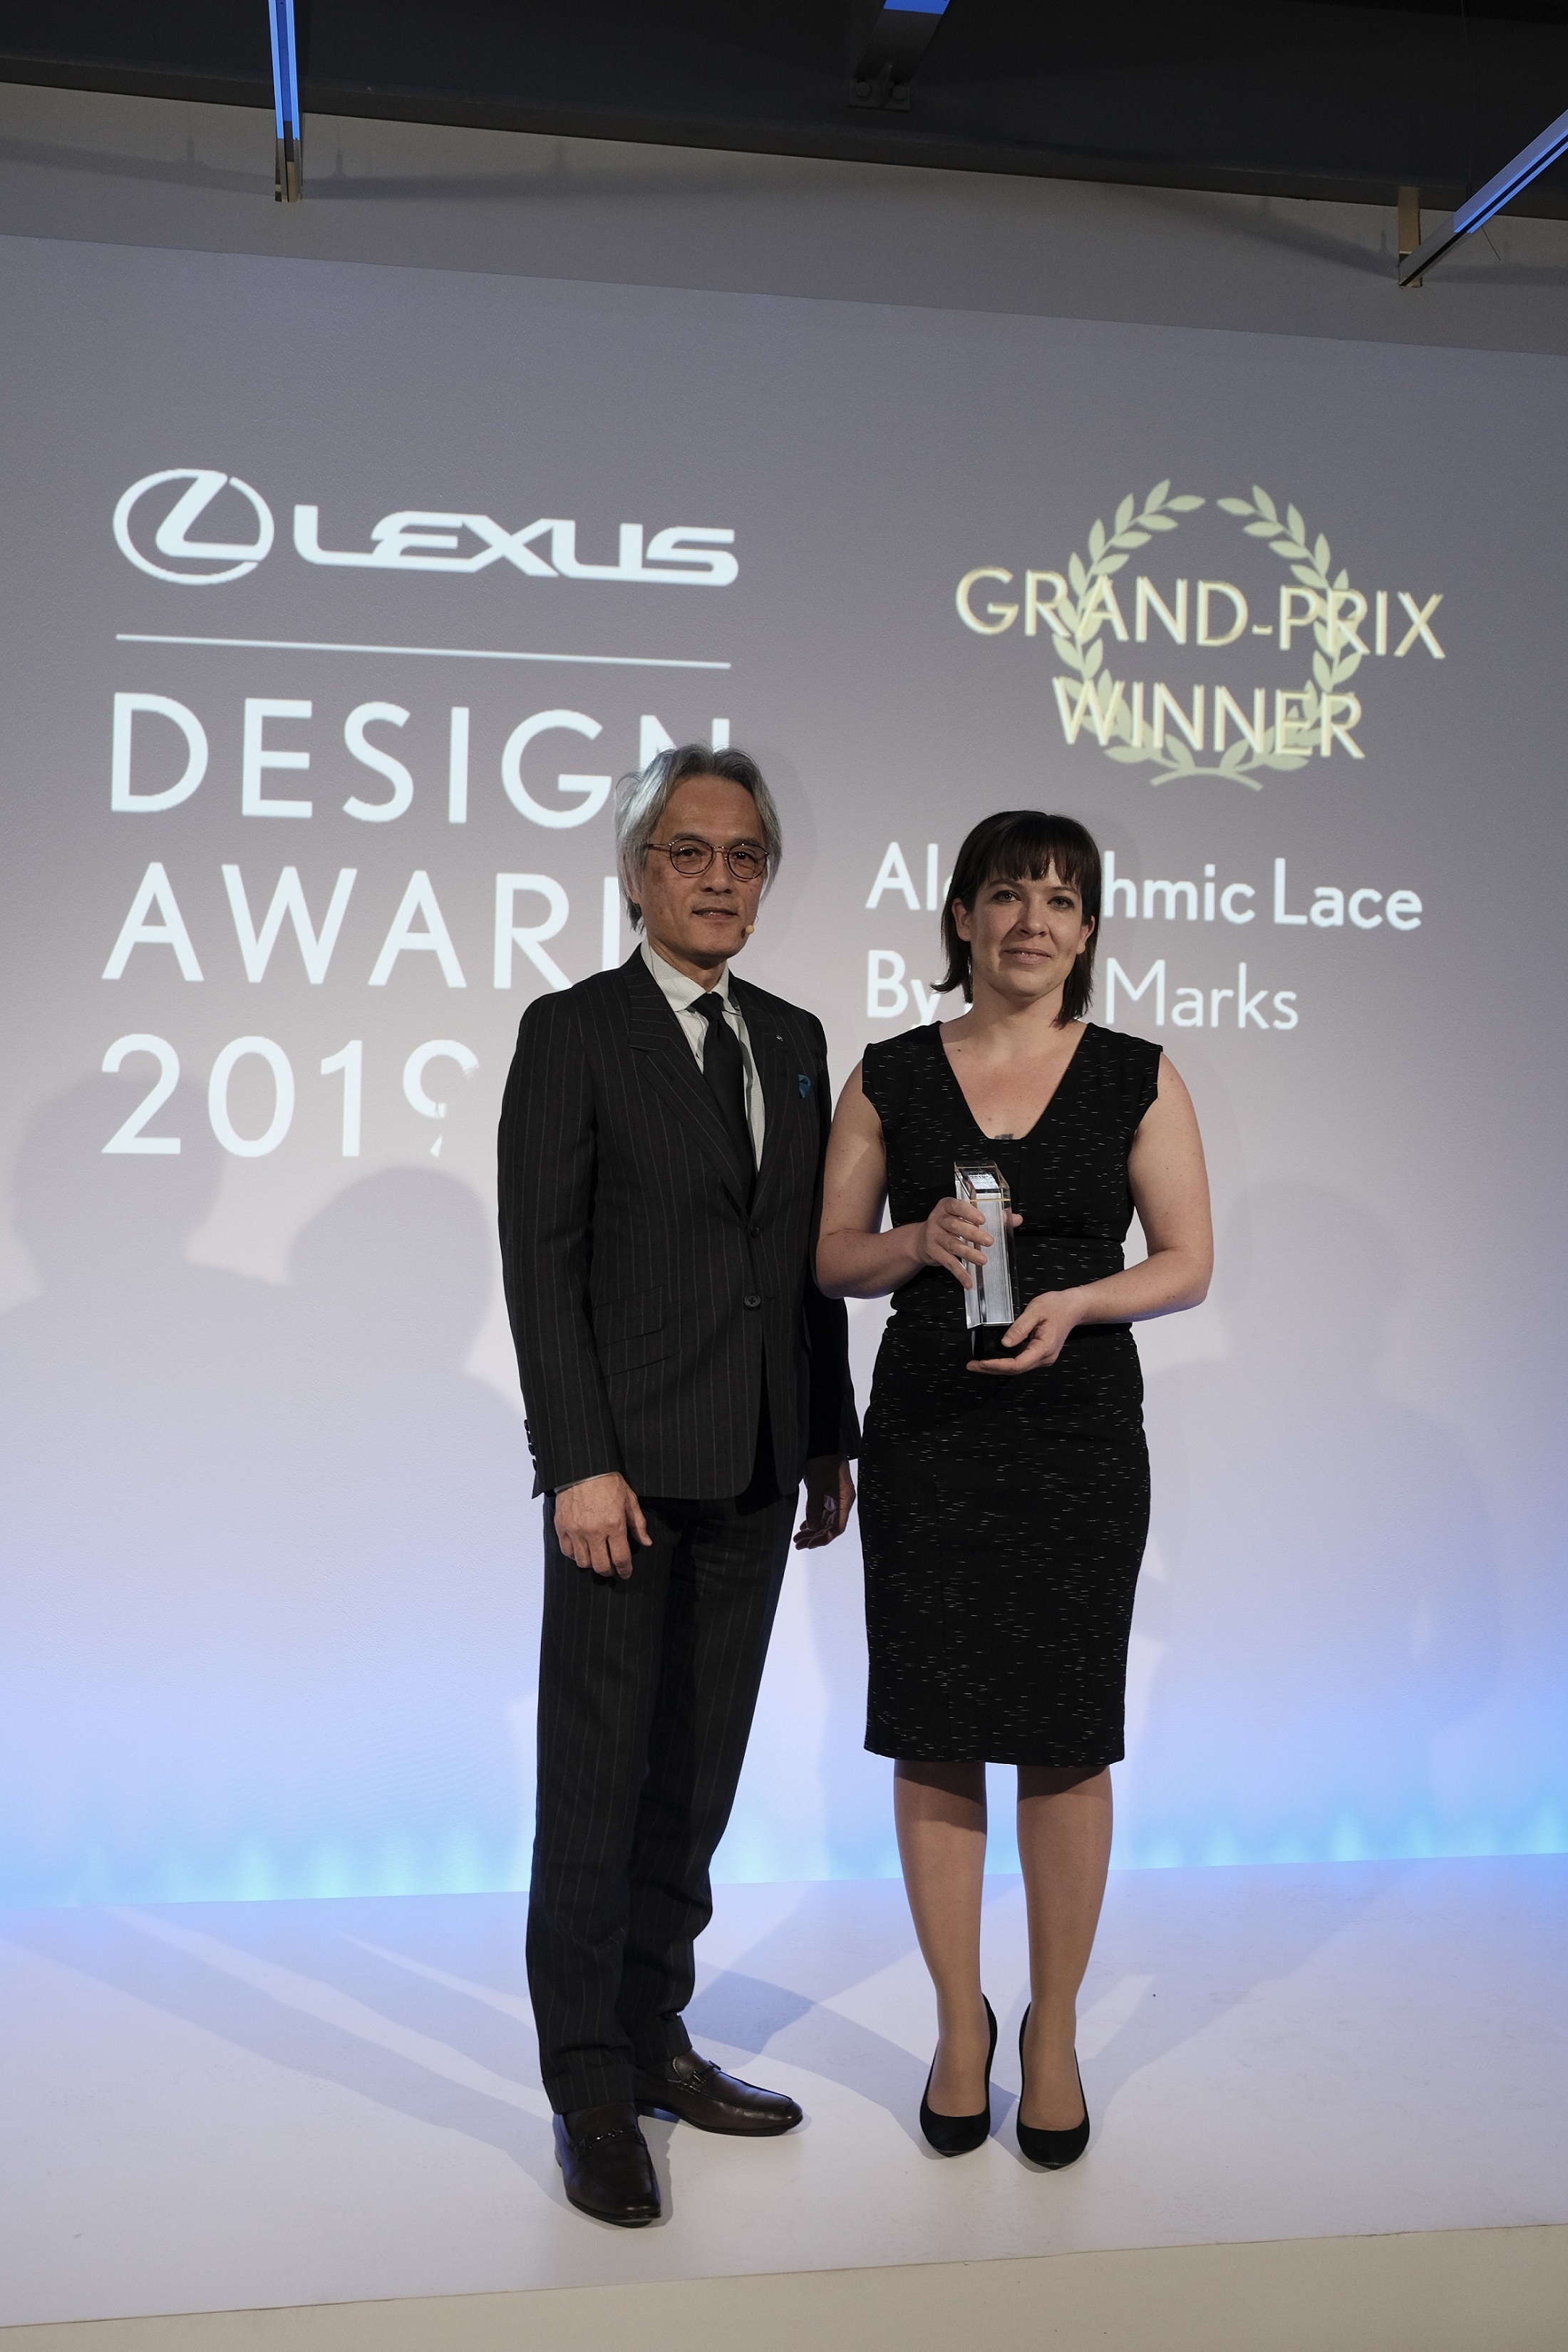 Lisa Marks凭借“算法蕾丝文胸”摘得2019年LEXUS雷克萨斯全球设计大奖最高奖桂冠